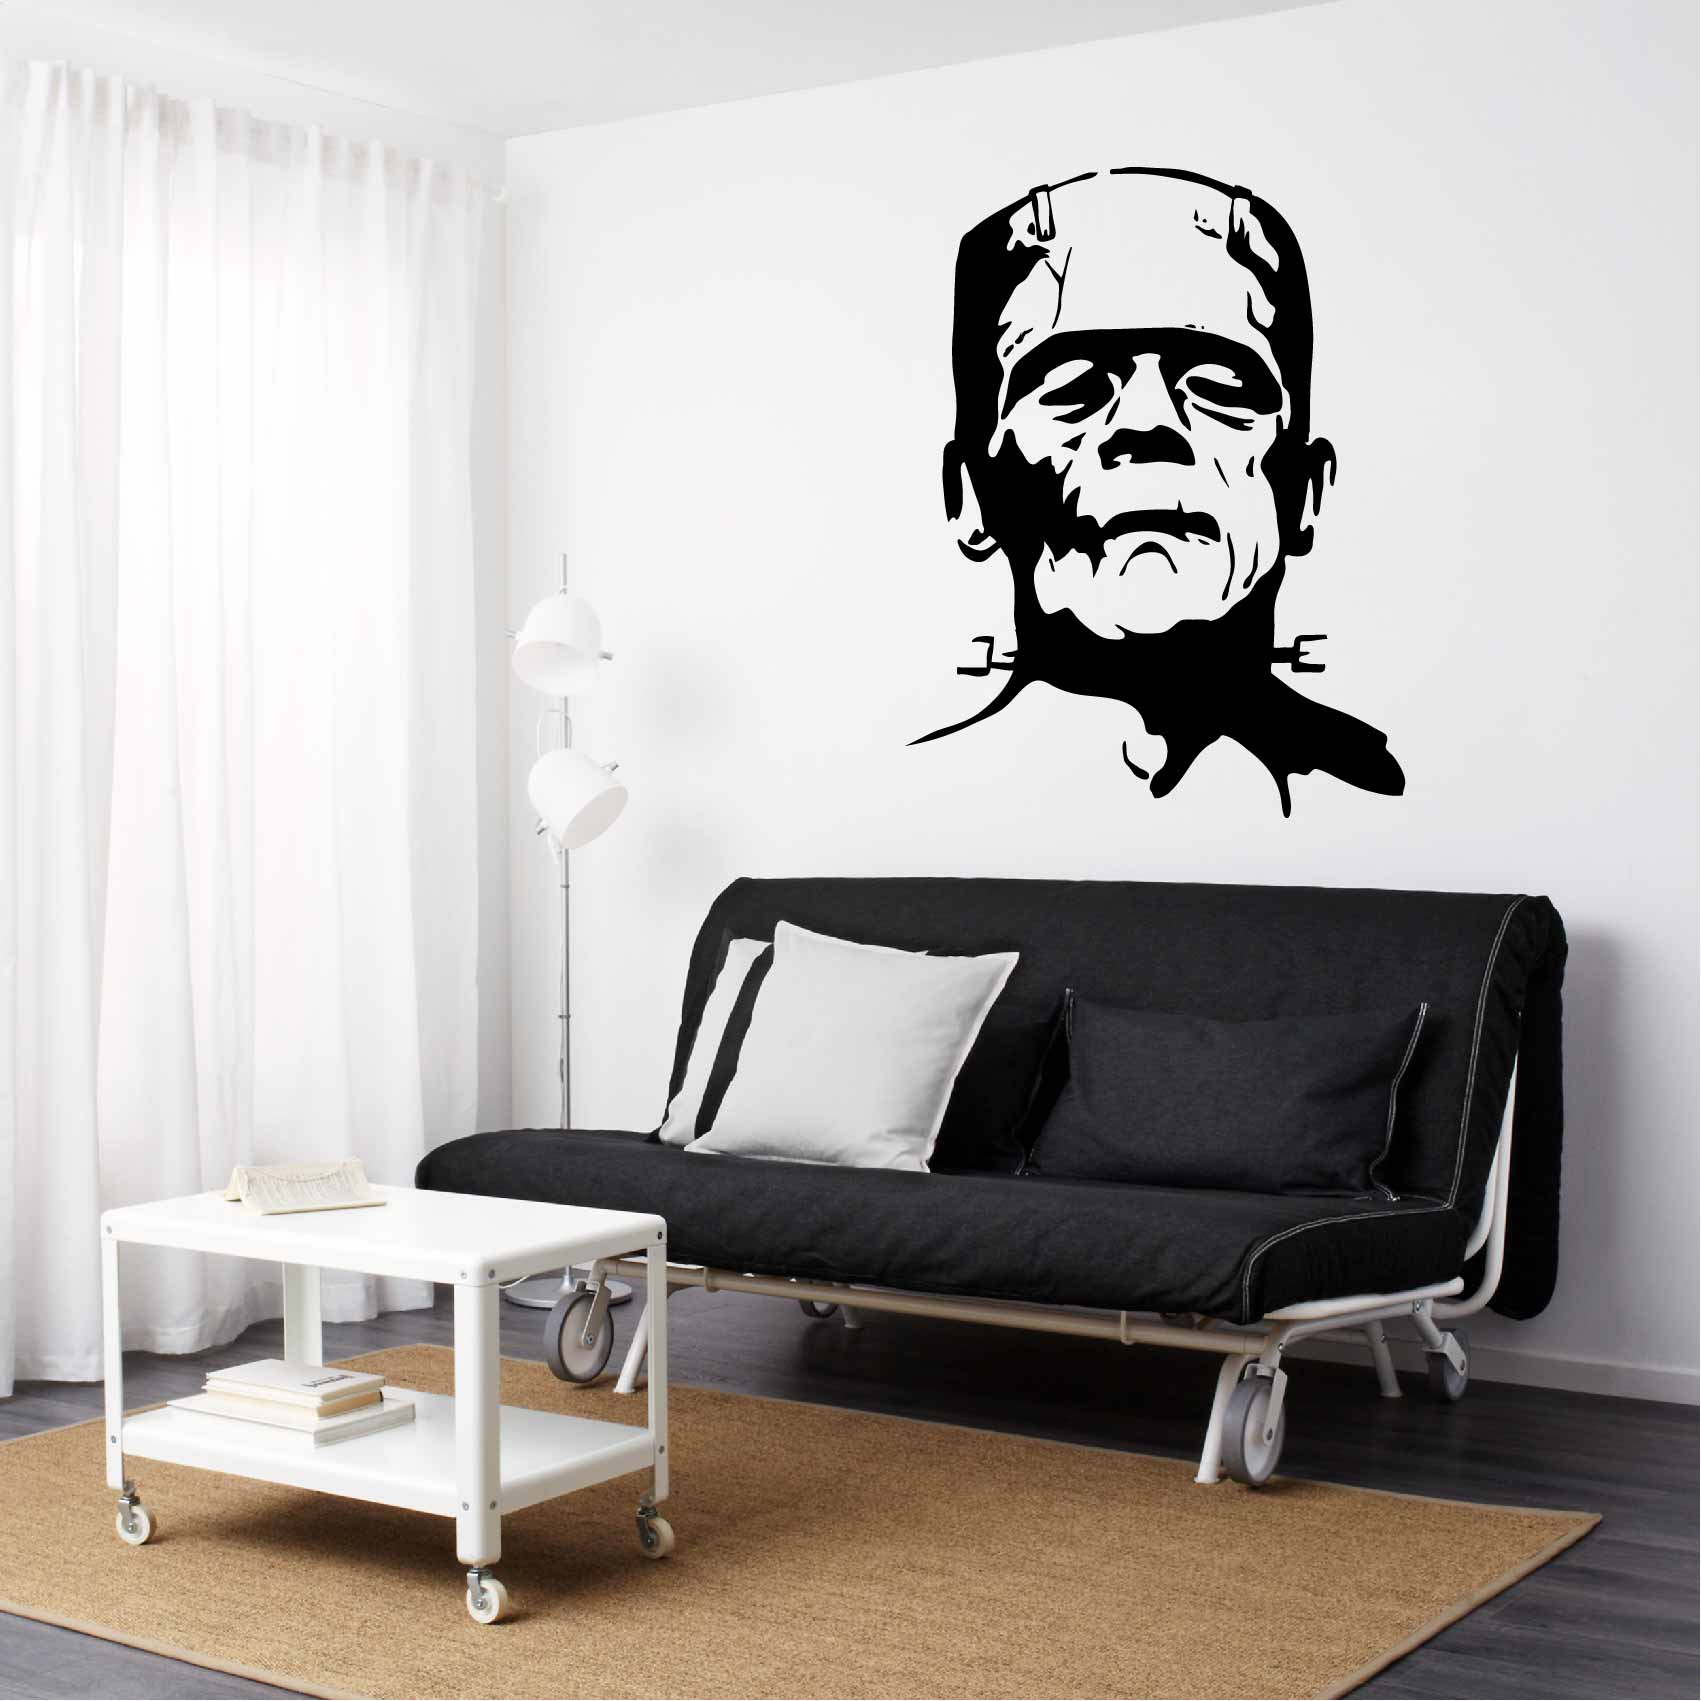 stickers-frankenstein-monster-ref19portrait-stickers-muraux-frankenstein-monster-autocollant-portrait-chambre-salon-sticker-mural